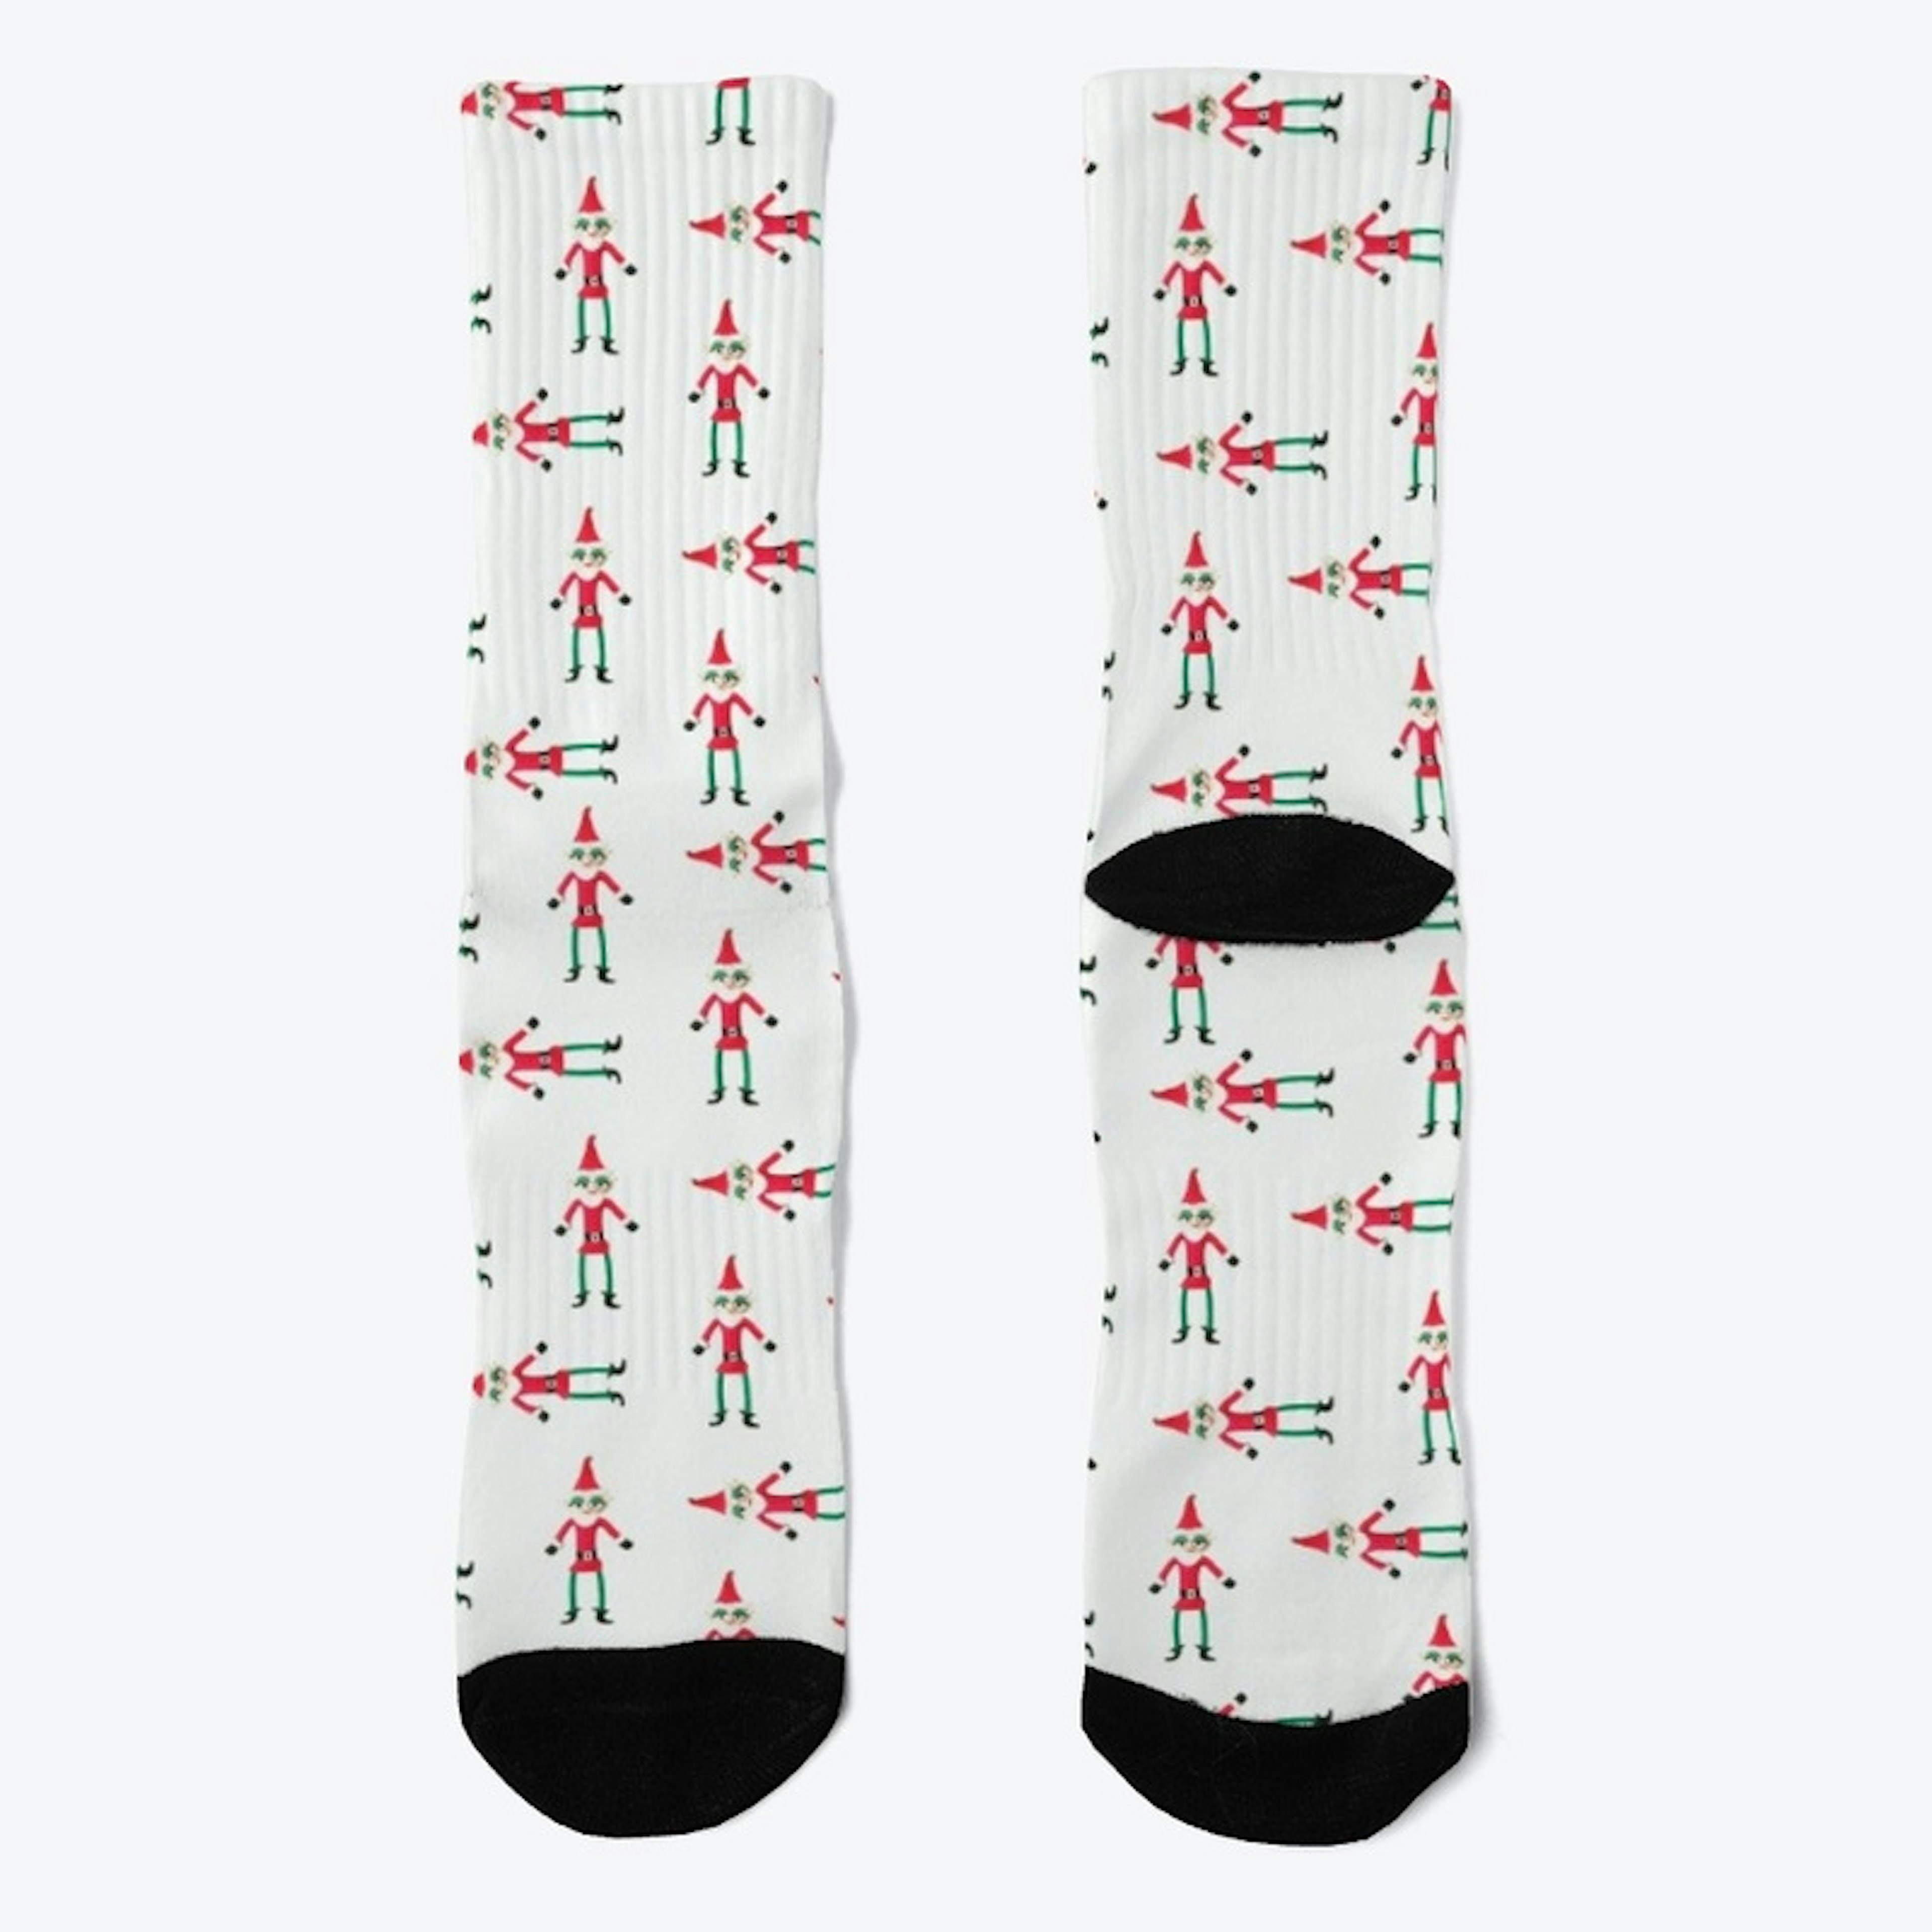 Smelf the Elf - Socks